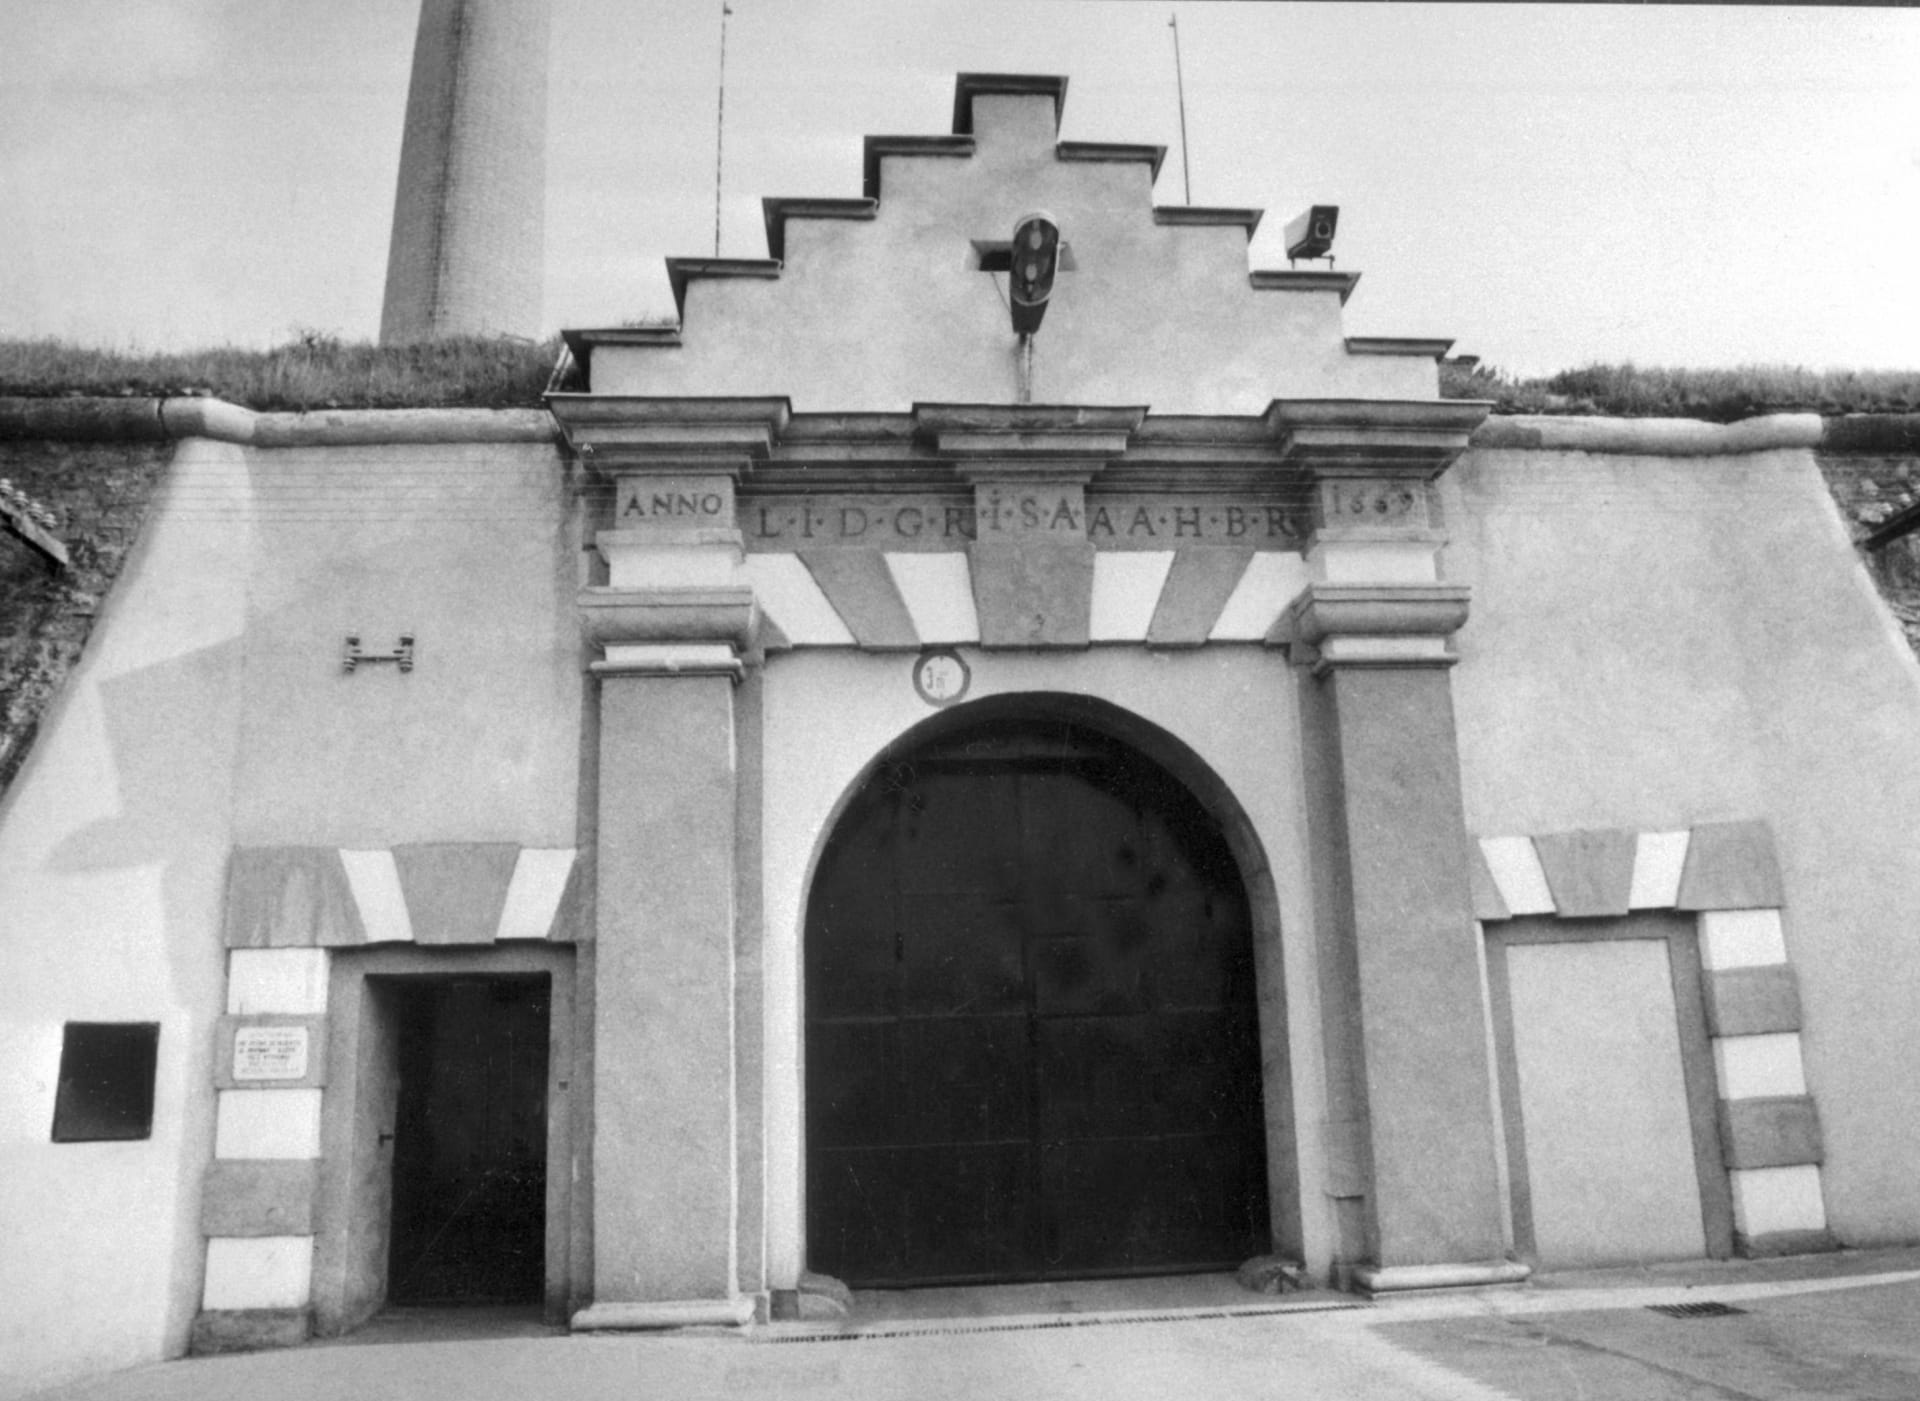 Vzpoura vypukla ve věznici pro nejtěžší případy v Leopoldově, když v zimě 1990 vyhlásil nový prezident Václav Havel rozsáhlou amnestii. 